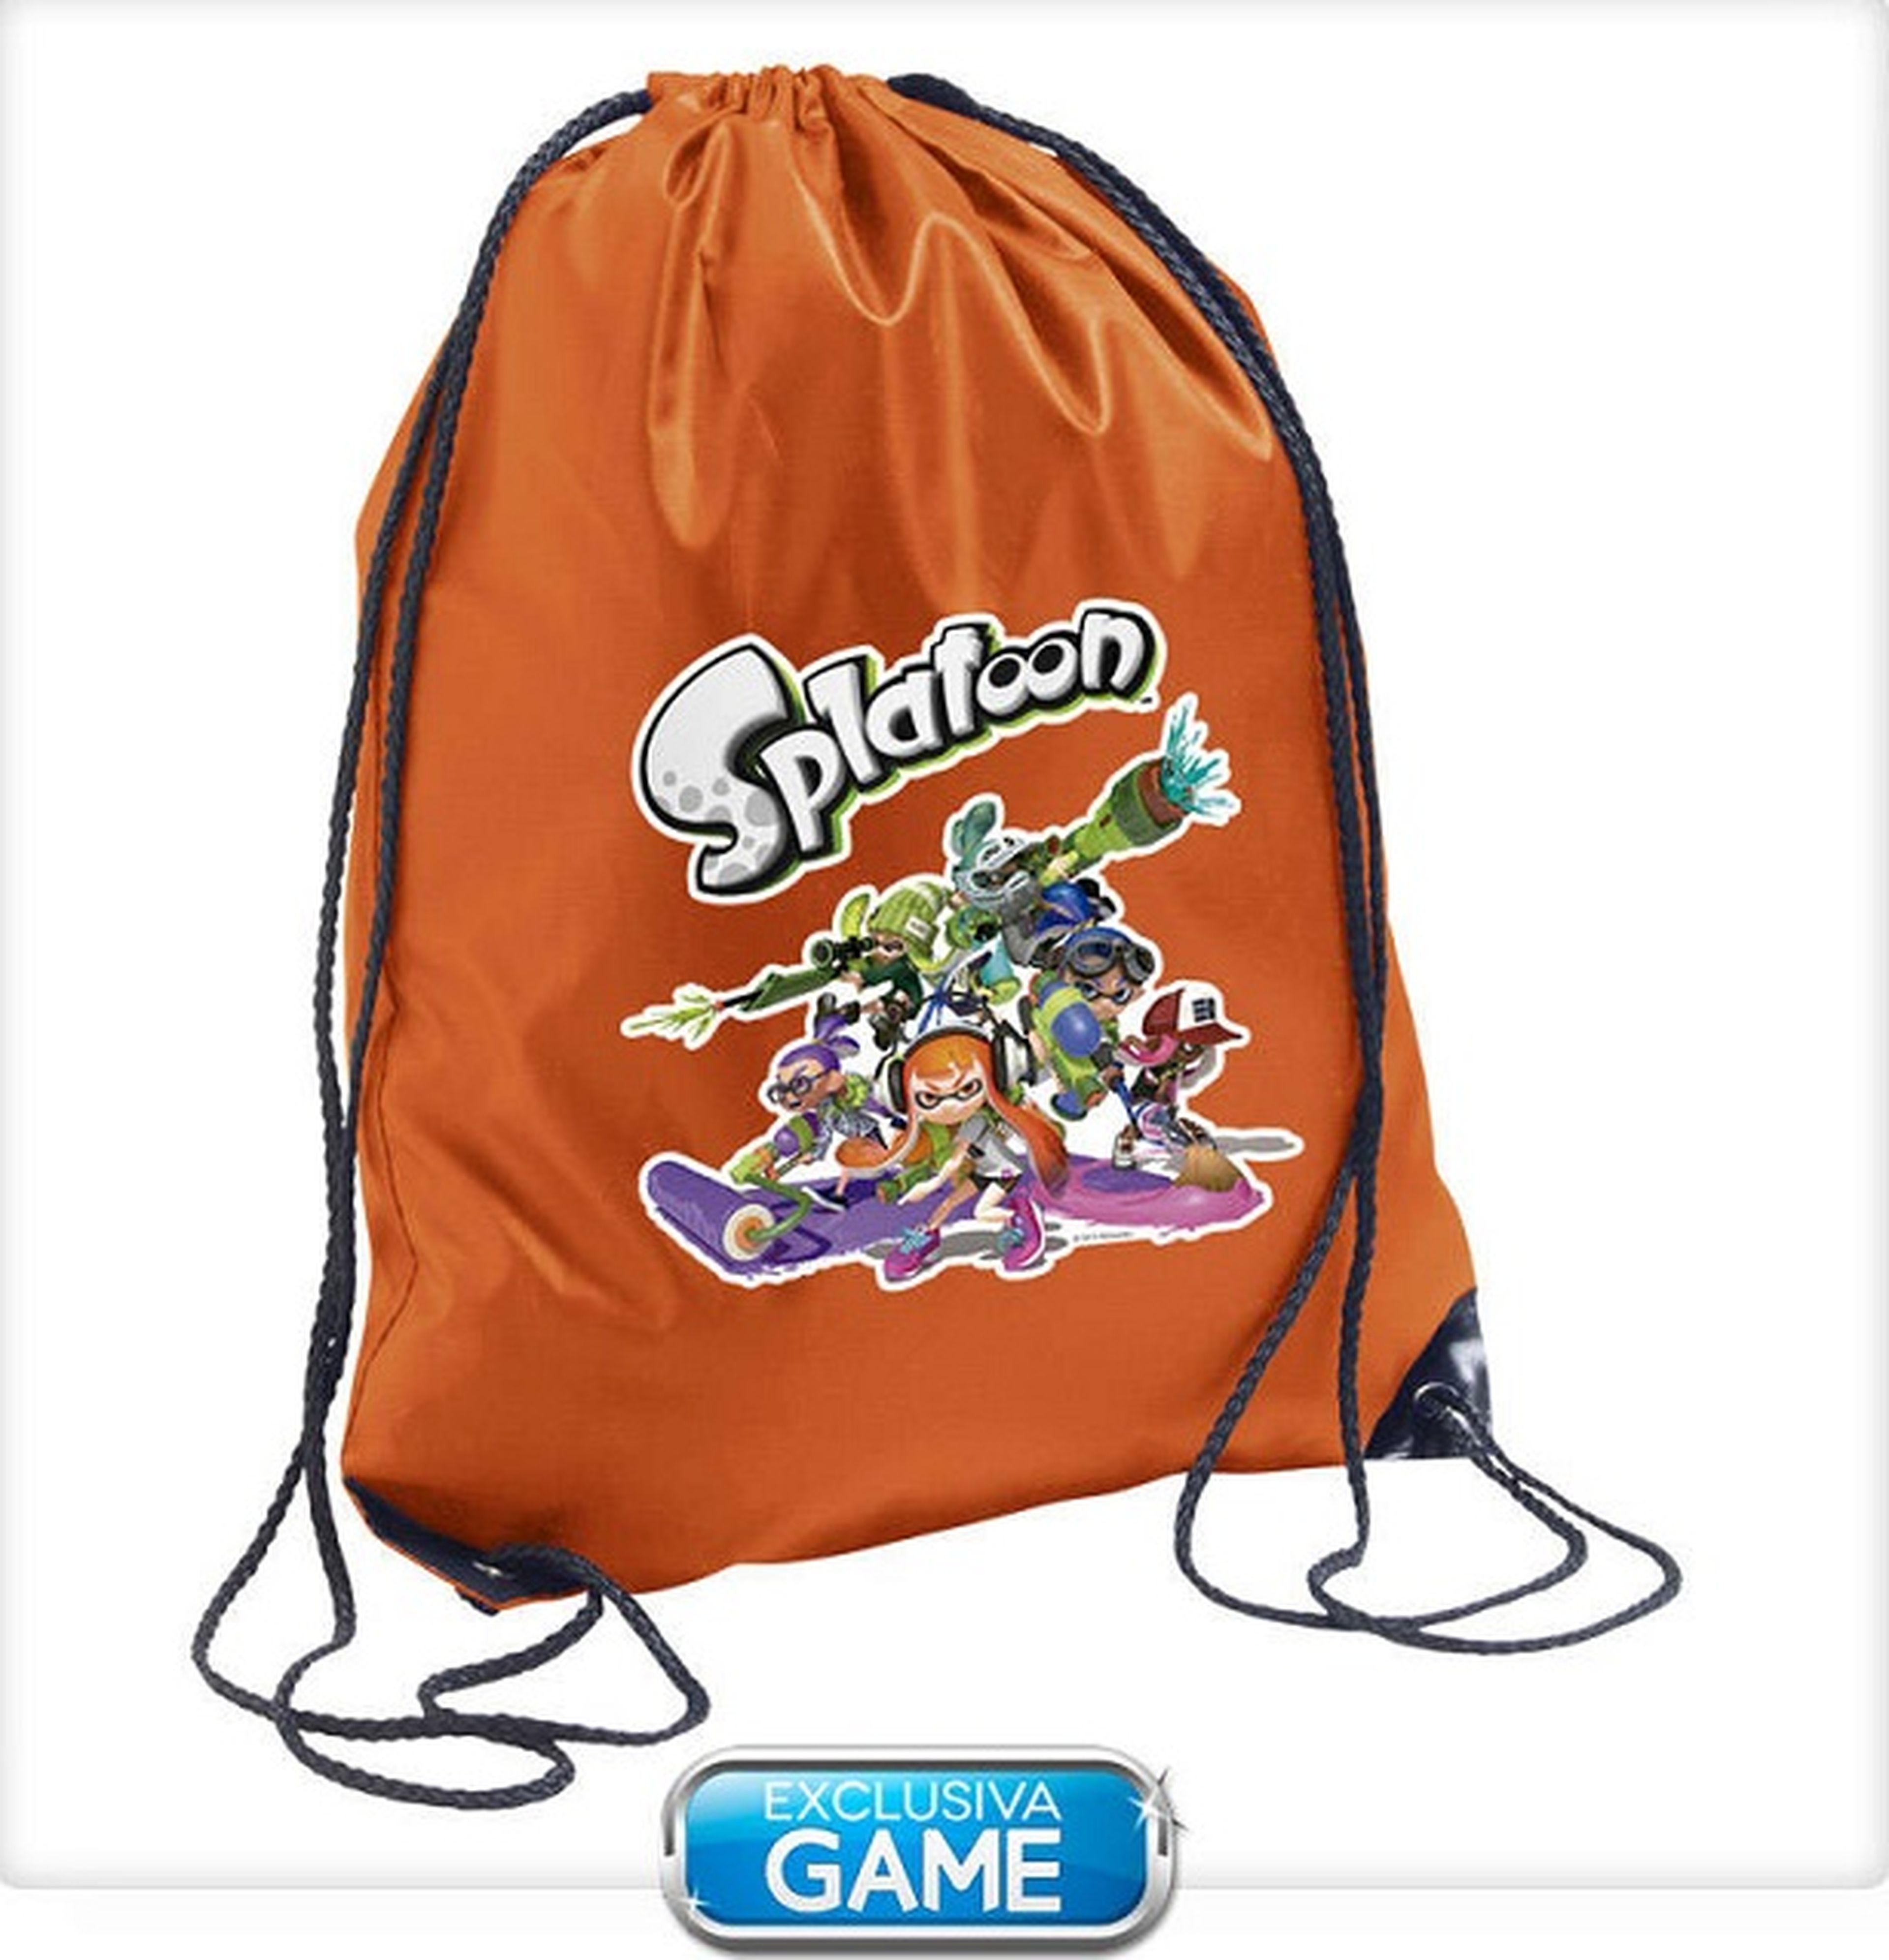 Splatoon llega a GAME con regalos exclusivos